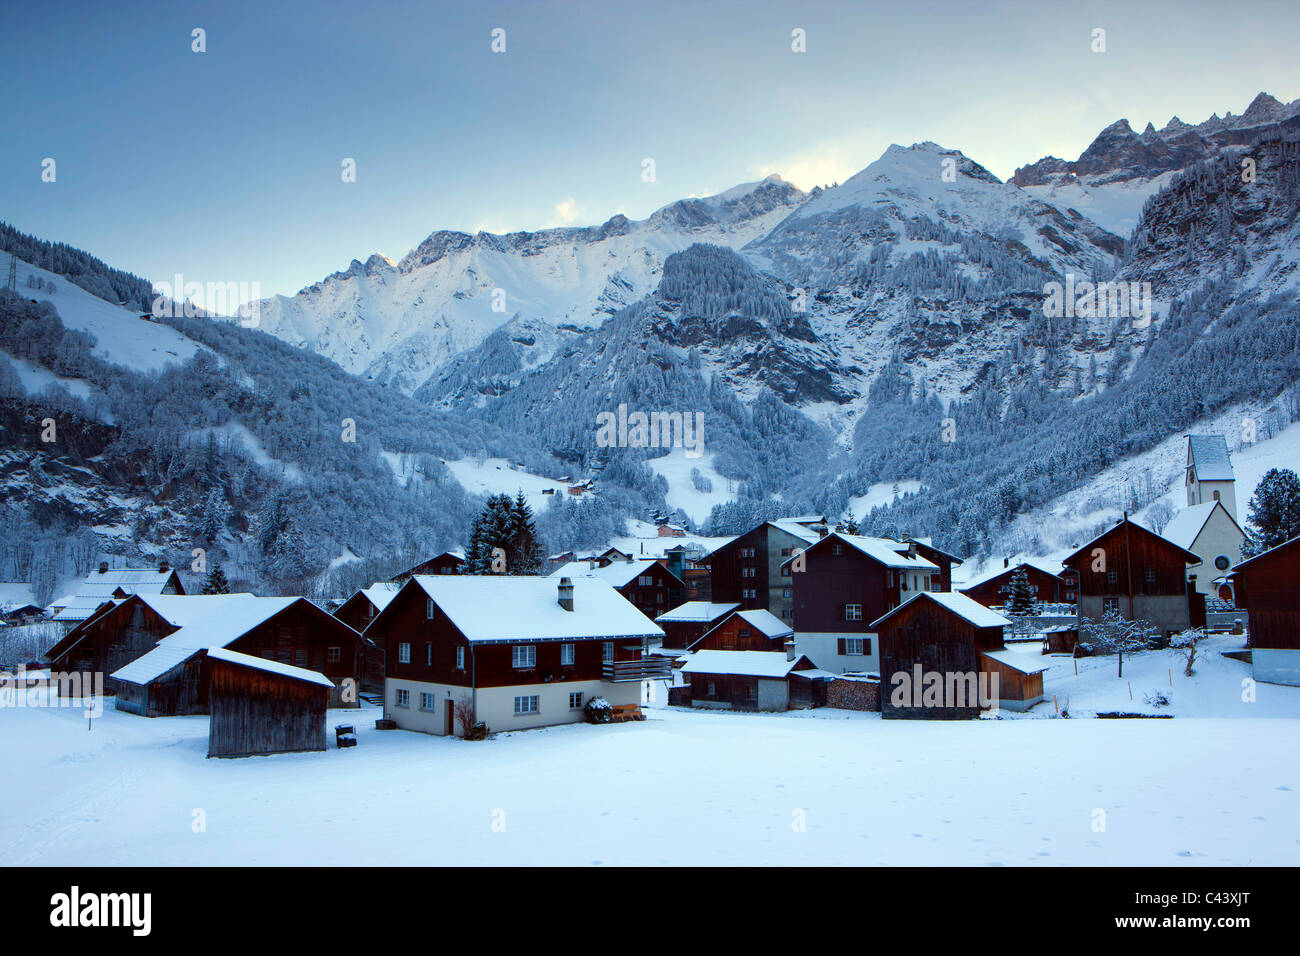 Elm, Schweiz, Europa, Kanton Glarus, Dorf, Häuser, Häuser, Kirche, Winter, Schnee, Berge Stockfoto